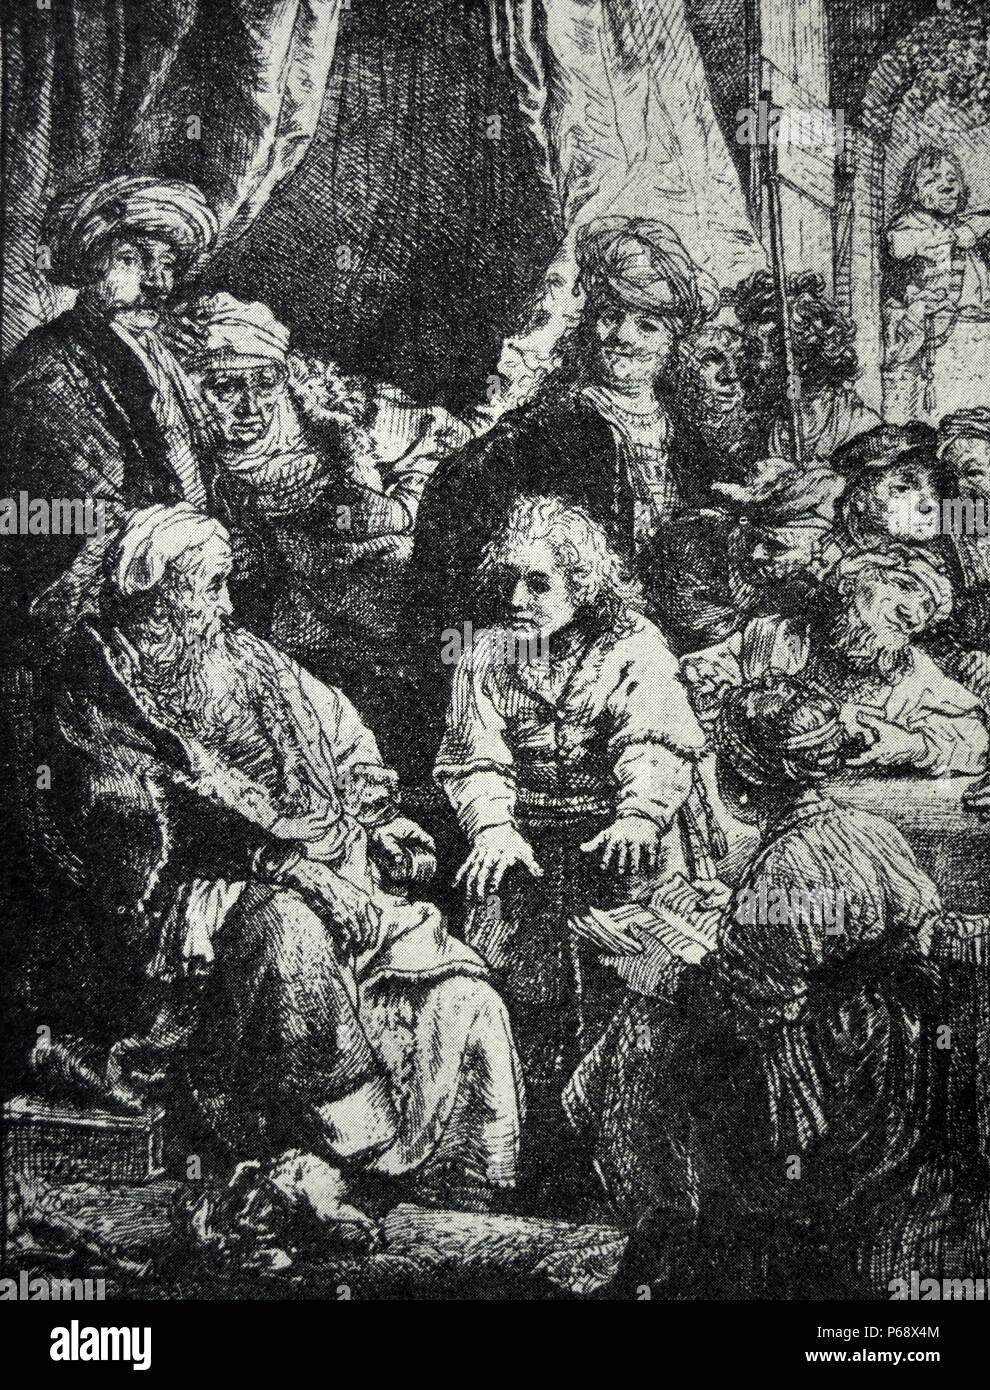 Aguafuerte titulada 'Joseph diciendo a sus sueños" creado por Rembrandt. Fecha del siglo XVII. Foto de stock